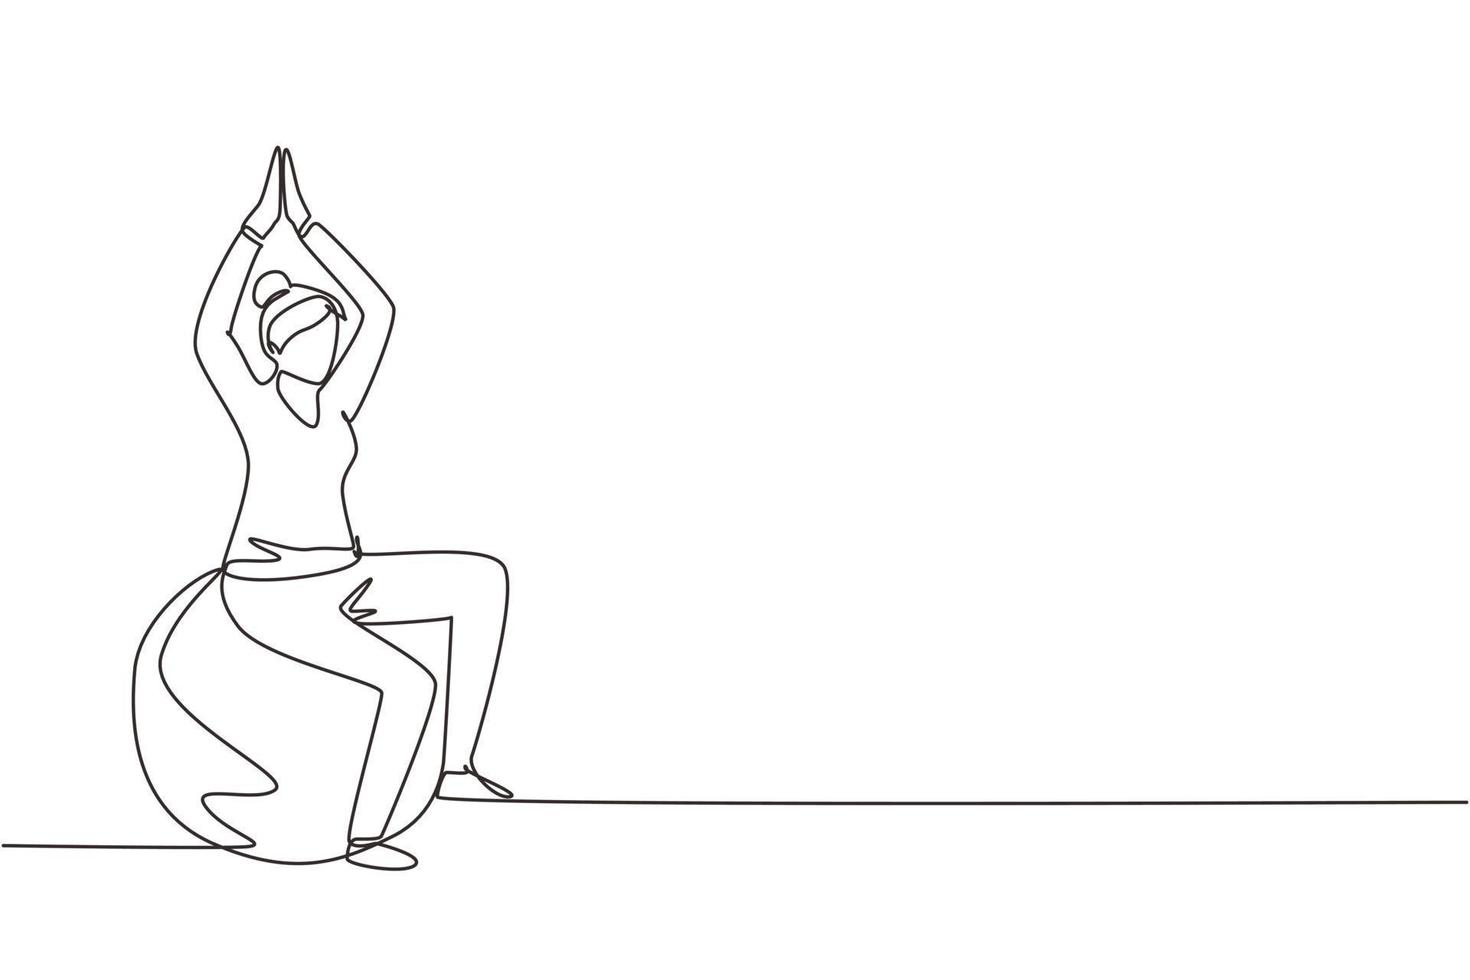 composição isométrica de reabilitação de fisioterapia de desenho de linha contínua única com paciente do sexo feminino sentada em cima da bola de borracha com o levantamento de ambas as mãos. vetor de design gráfico de desenho de uma linha